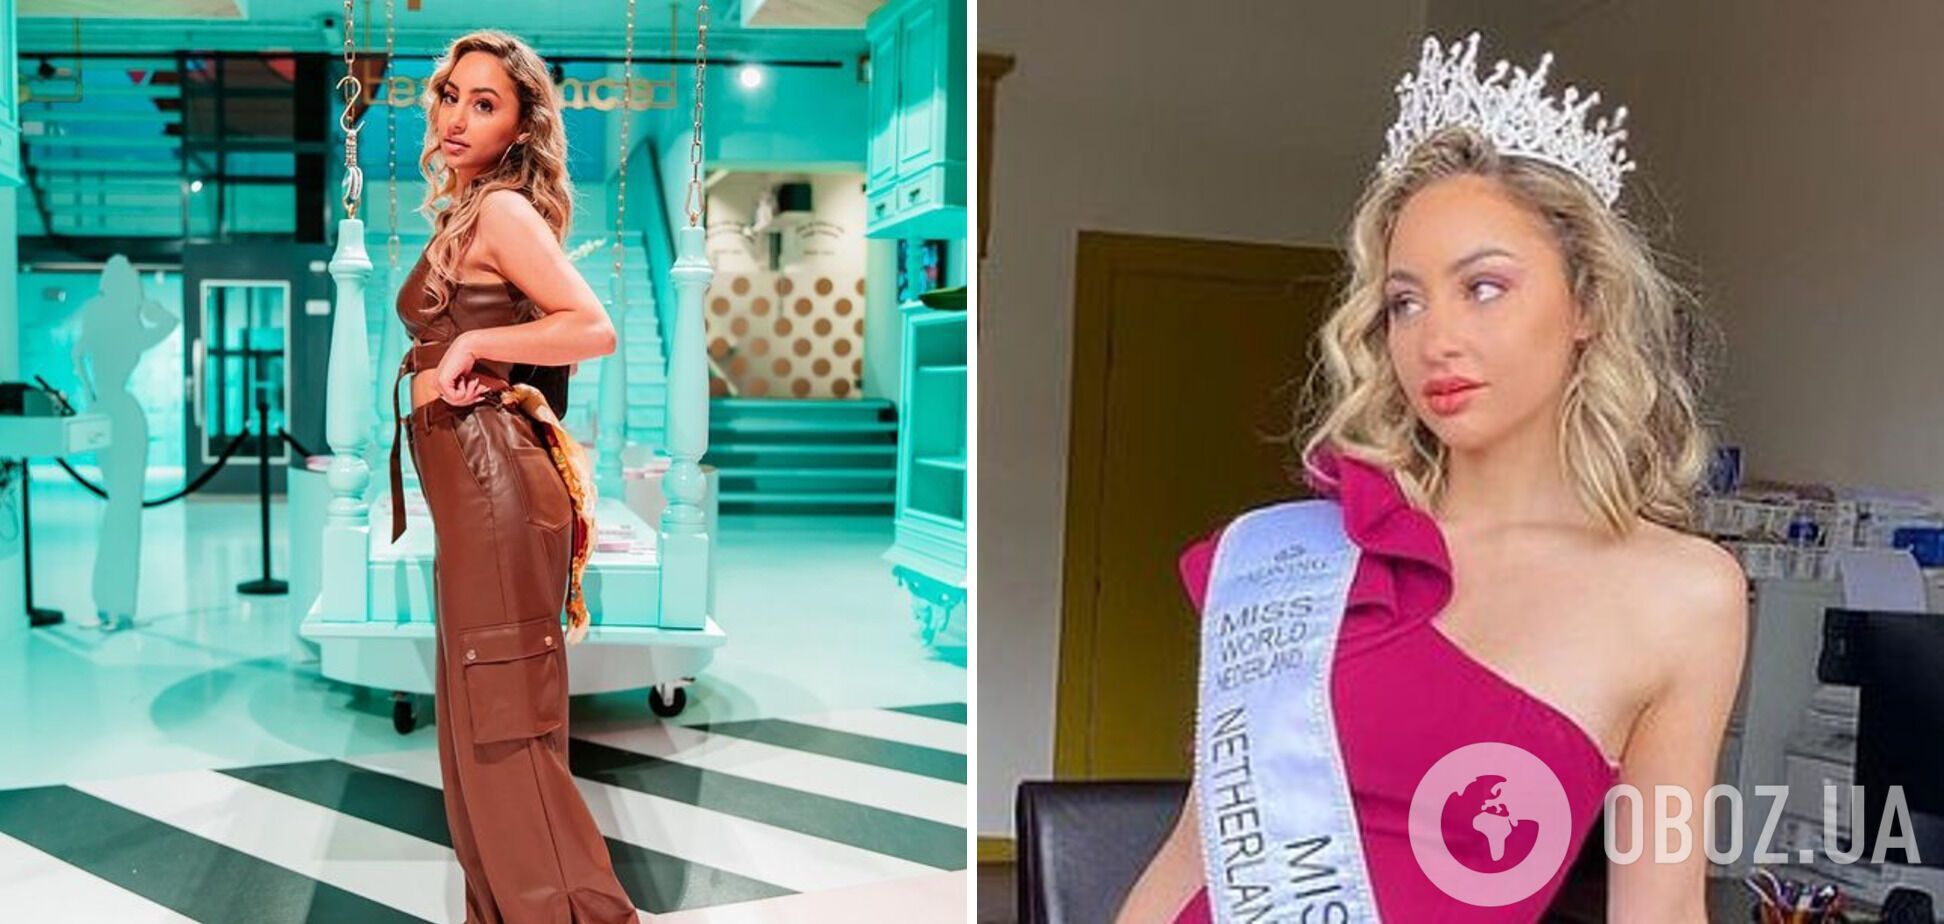 Ділай Марая Віллемстайн відмовилася від участі в конкурсі "Міс світу"